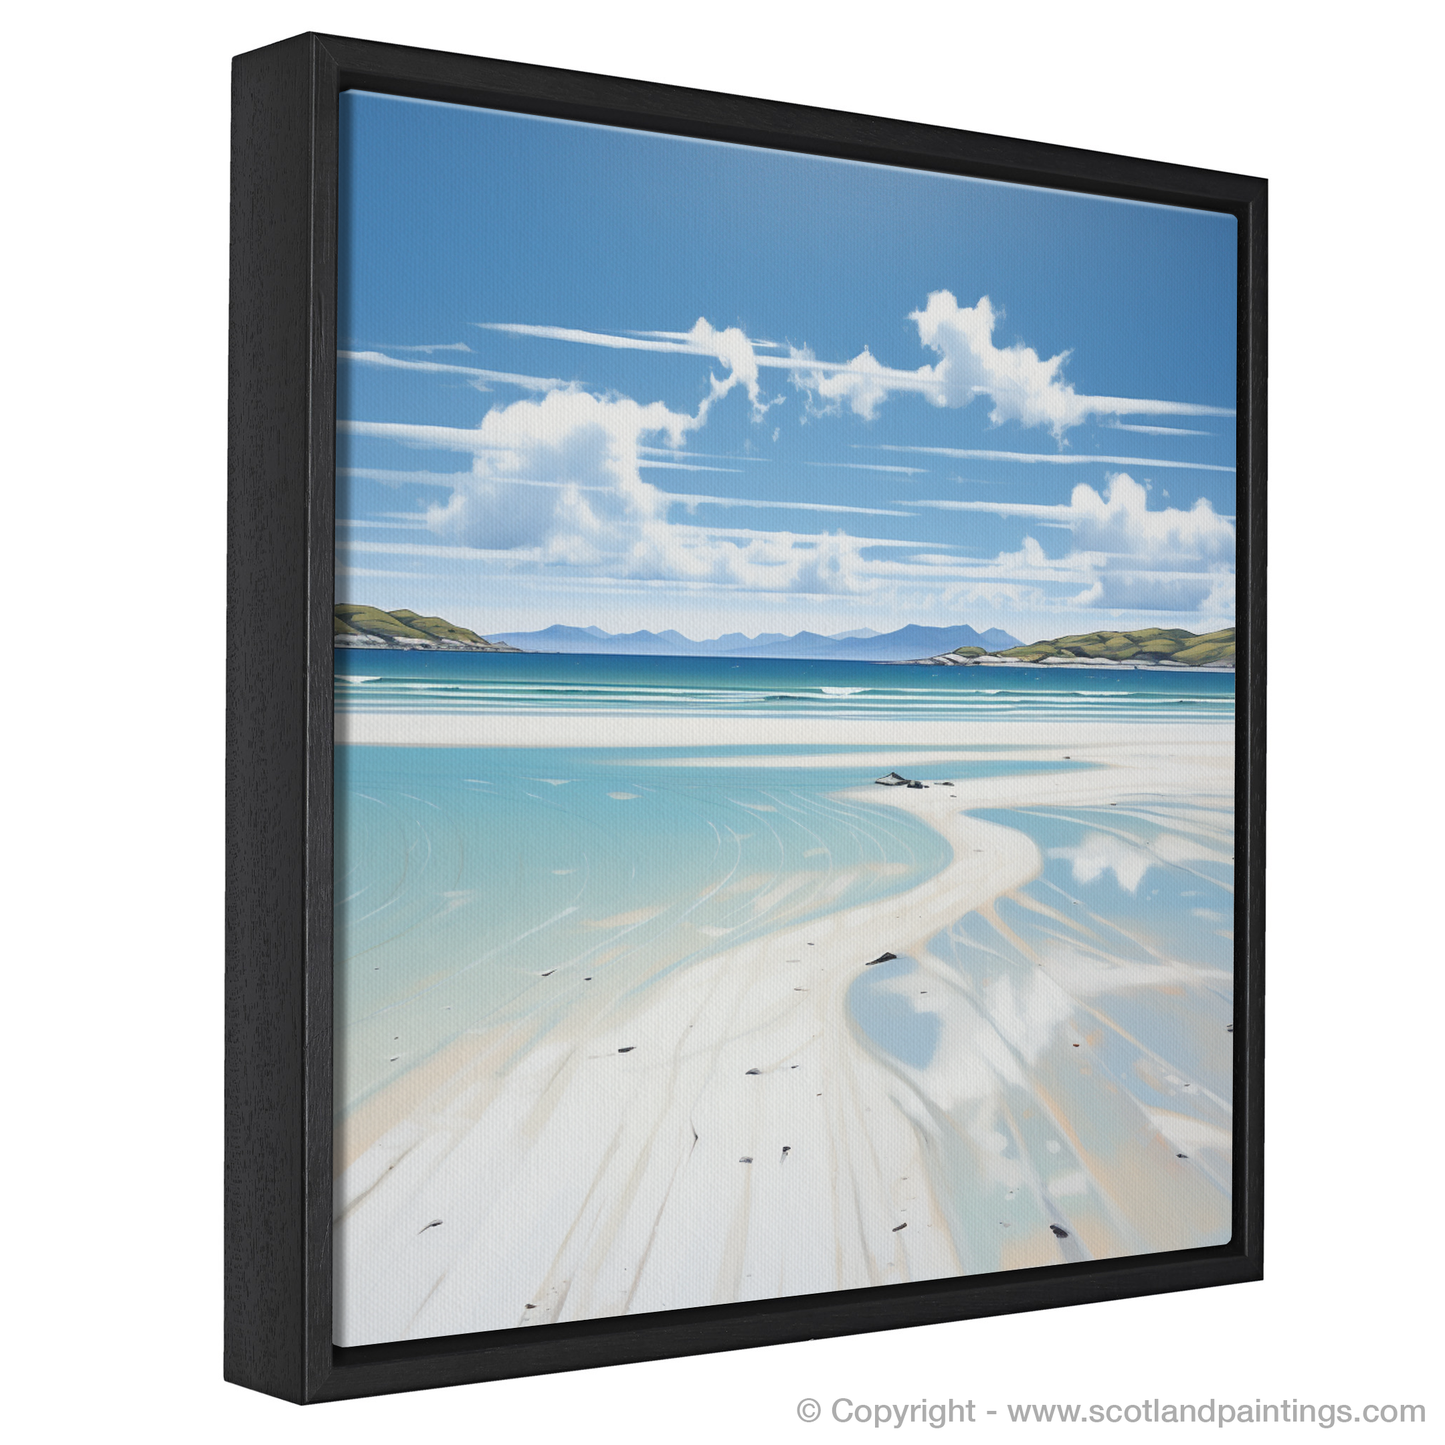 Painting and Art Print of Luskentyre Beach, Isle of Harris entitled "Serene Sands of Luskentyre Beach".